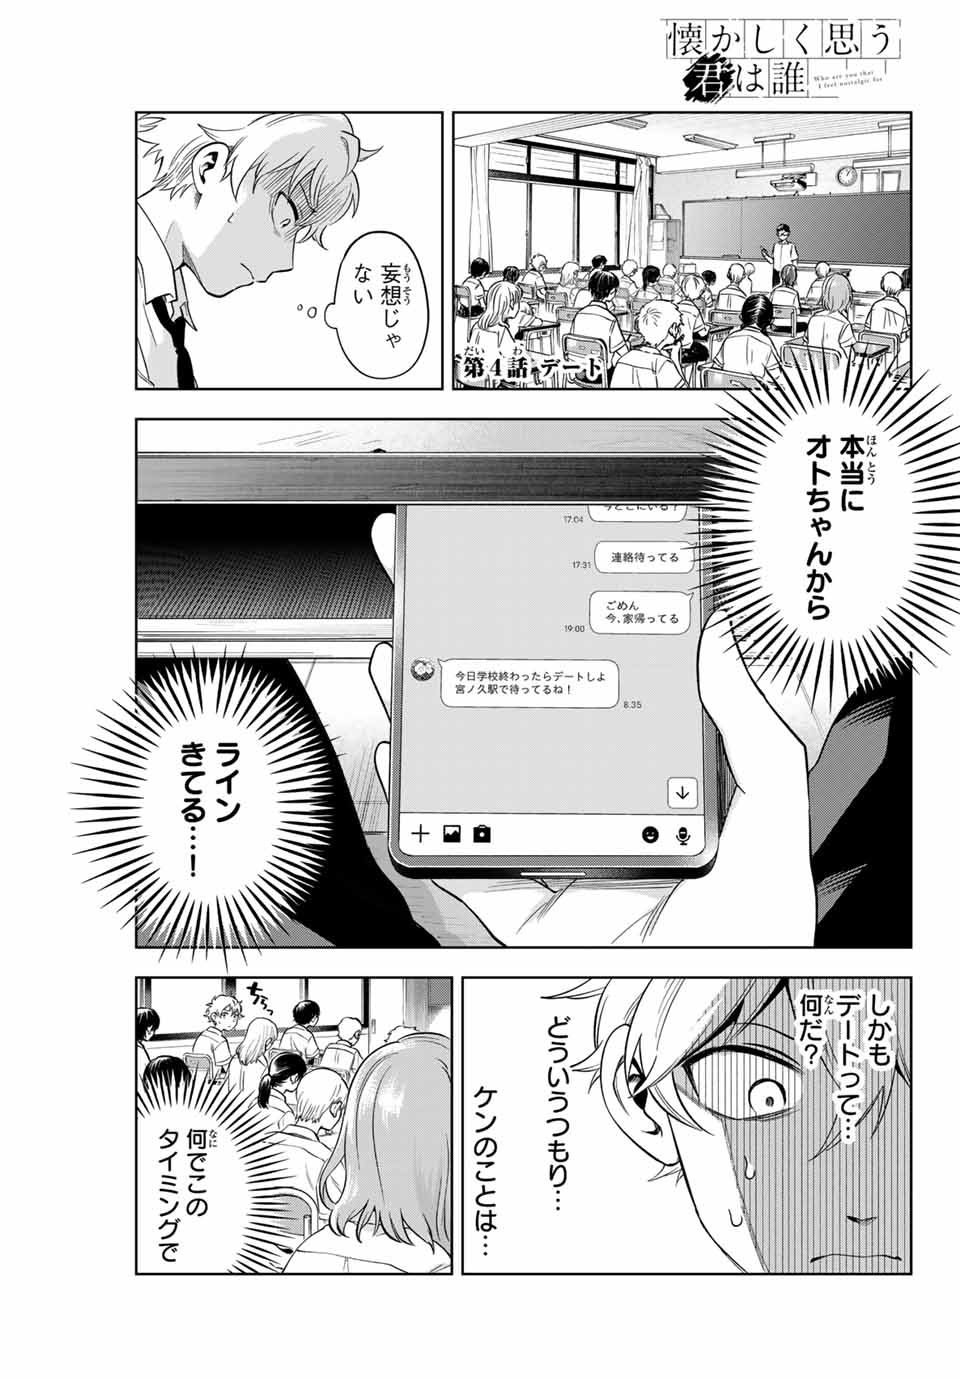 Natsukashiku Omou Kimi Wa Dare - Chapter 4 - Page 1